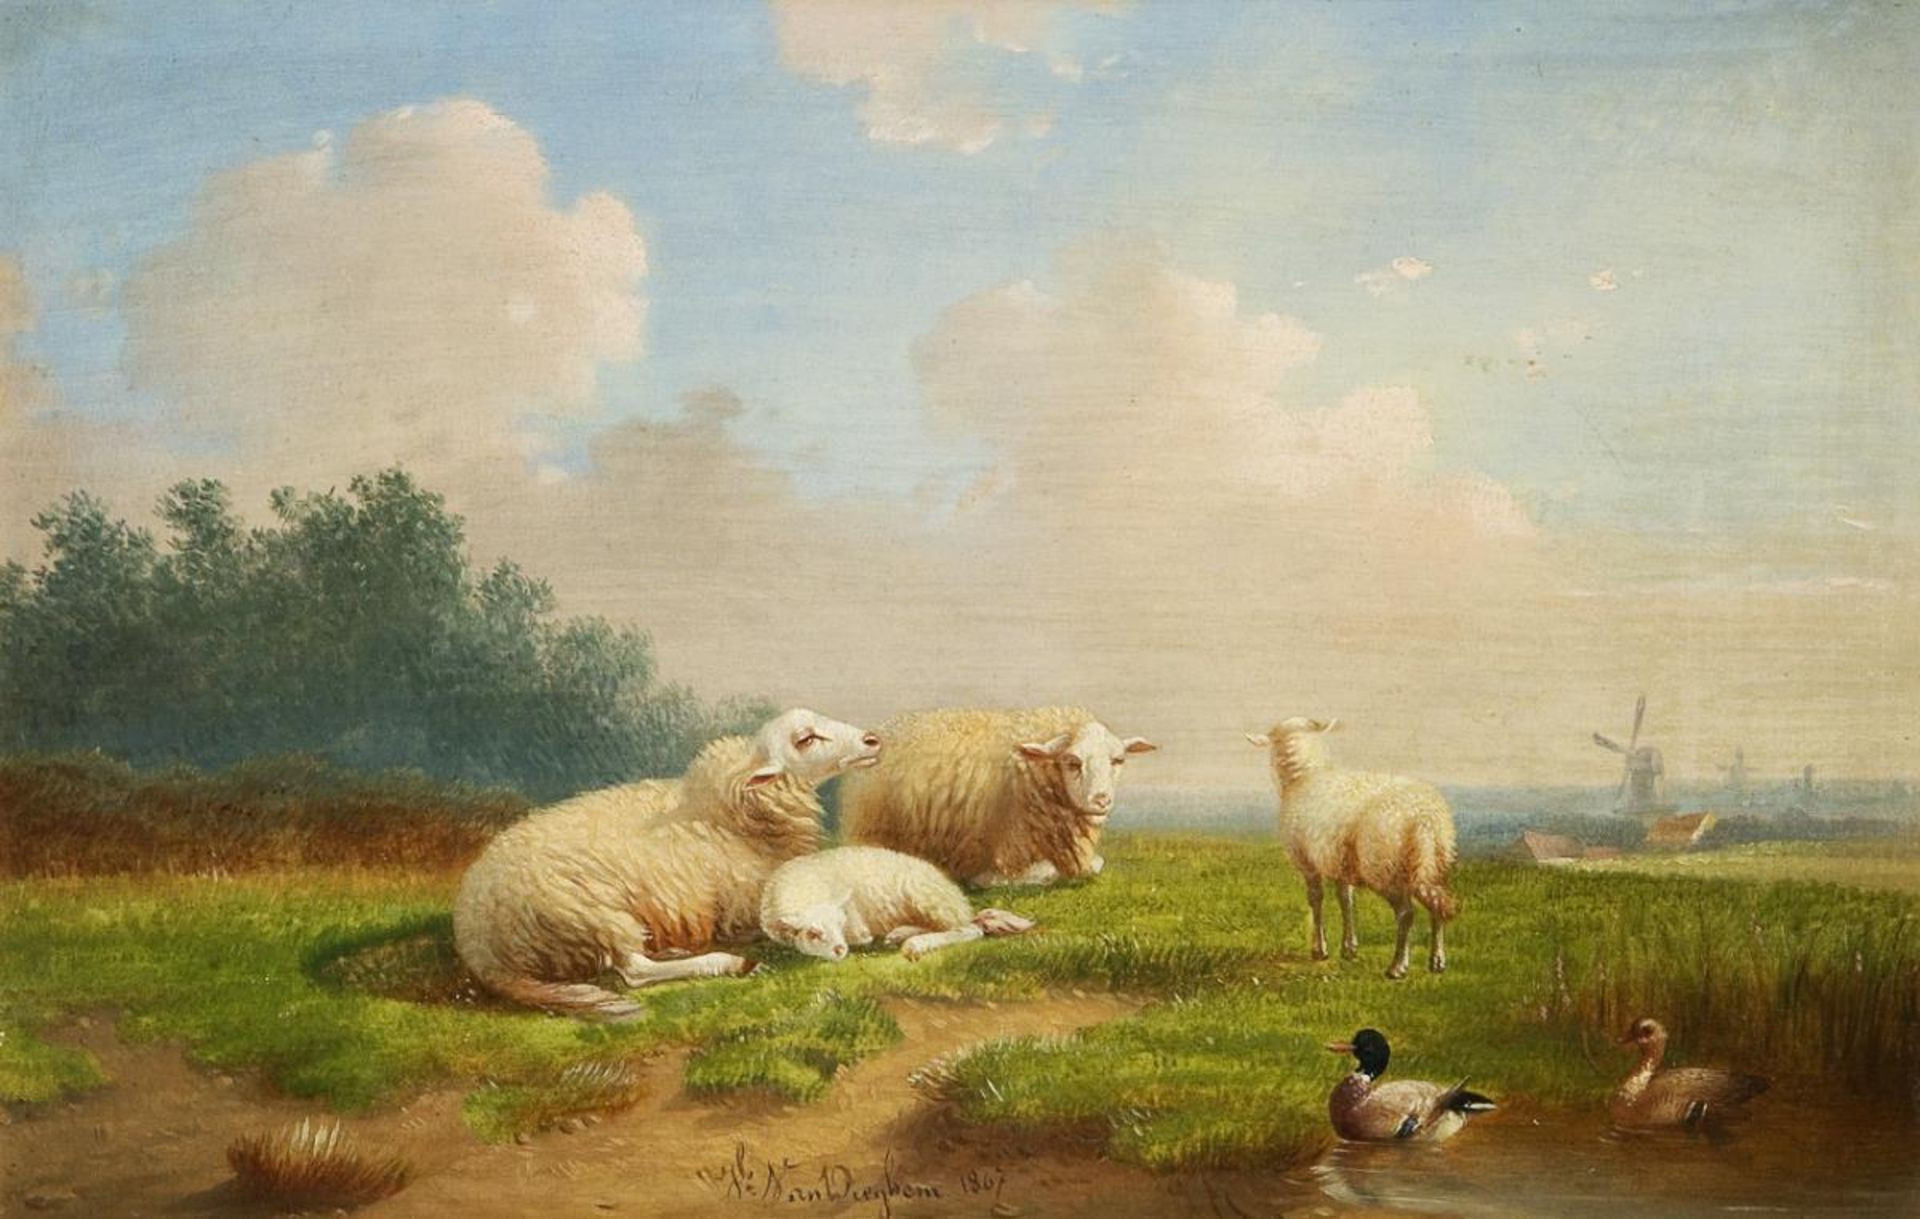 DIEGHEM, Joseph van (1843 Hal - 1885 Brüssel). Schafe und Enten in Sommerlandschaft.